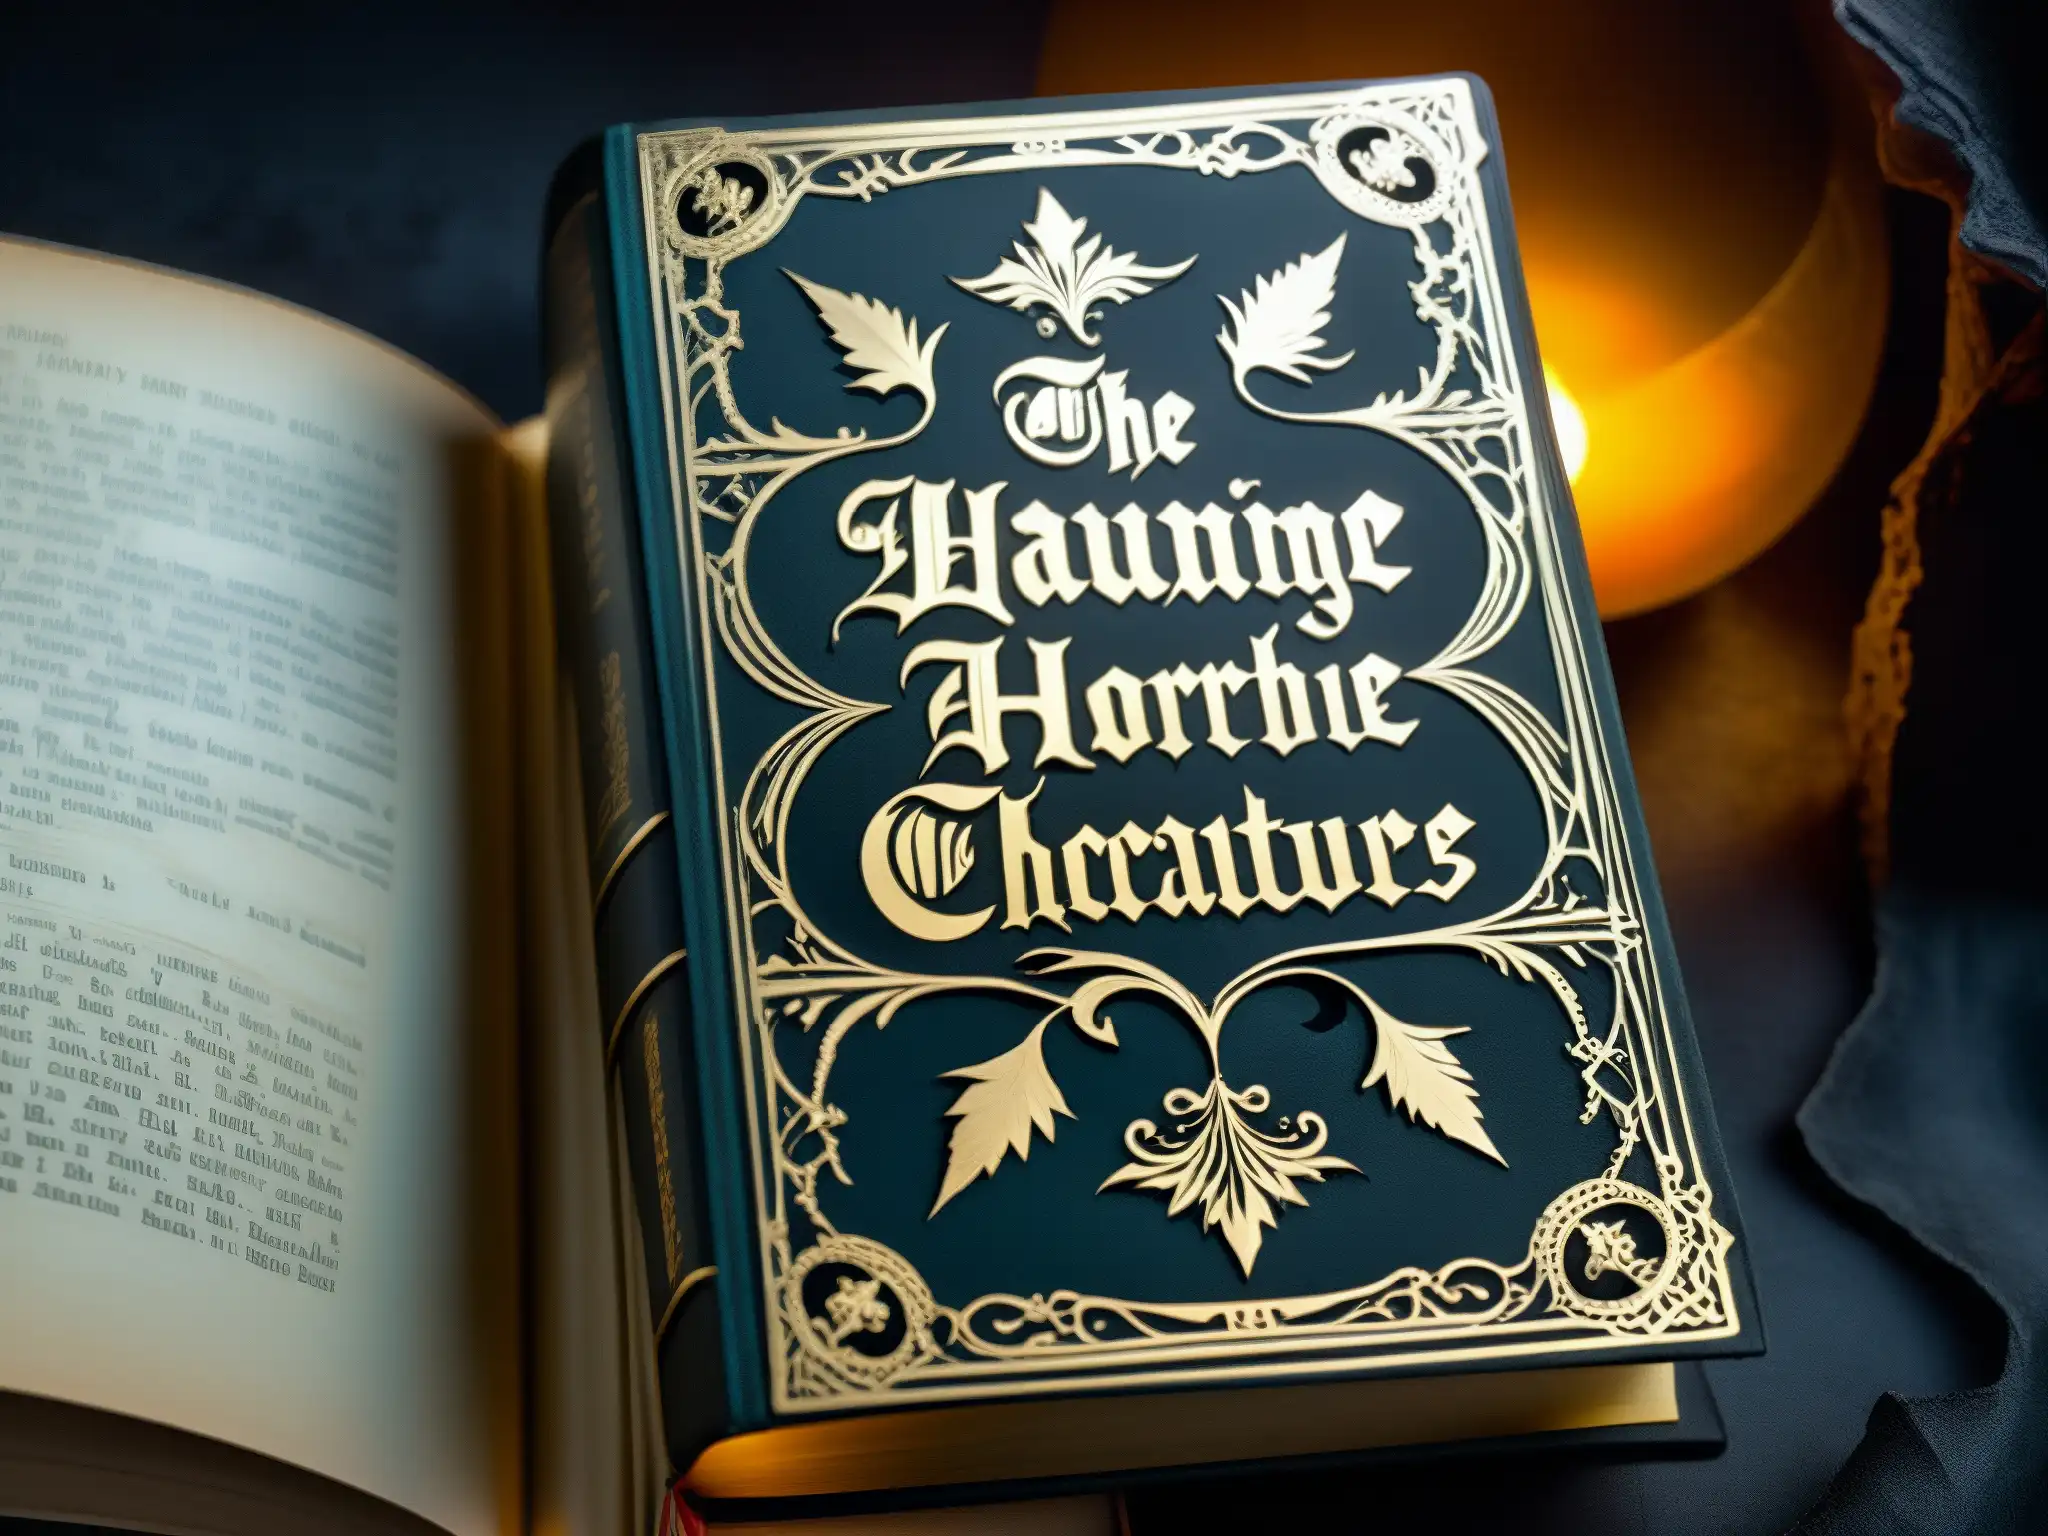 Closeup de un antiguo libro gótico con bordes desgastados y diseño en relieve, iluminado por un foco tenue, evocando la fascinación por el horror y la psicología de su atracción